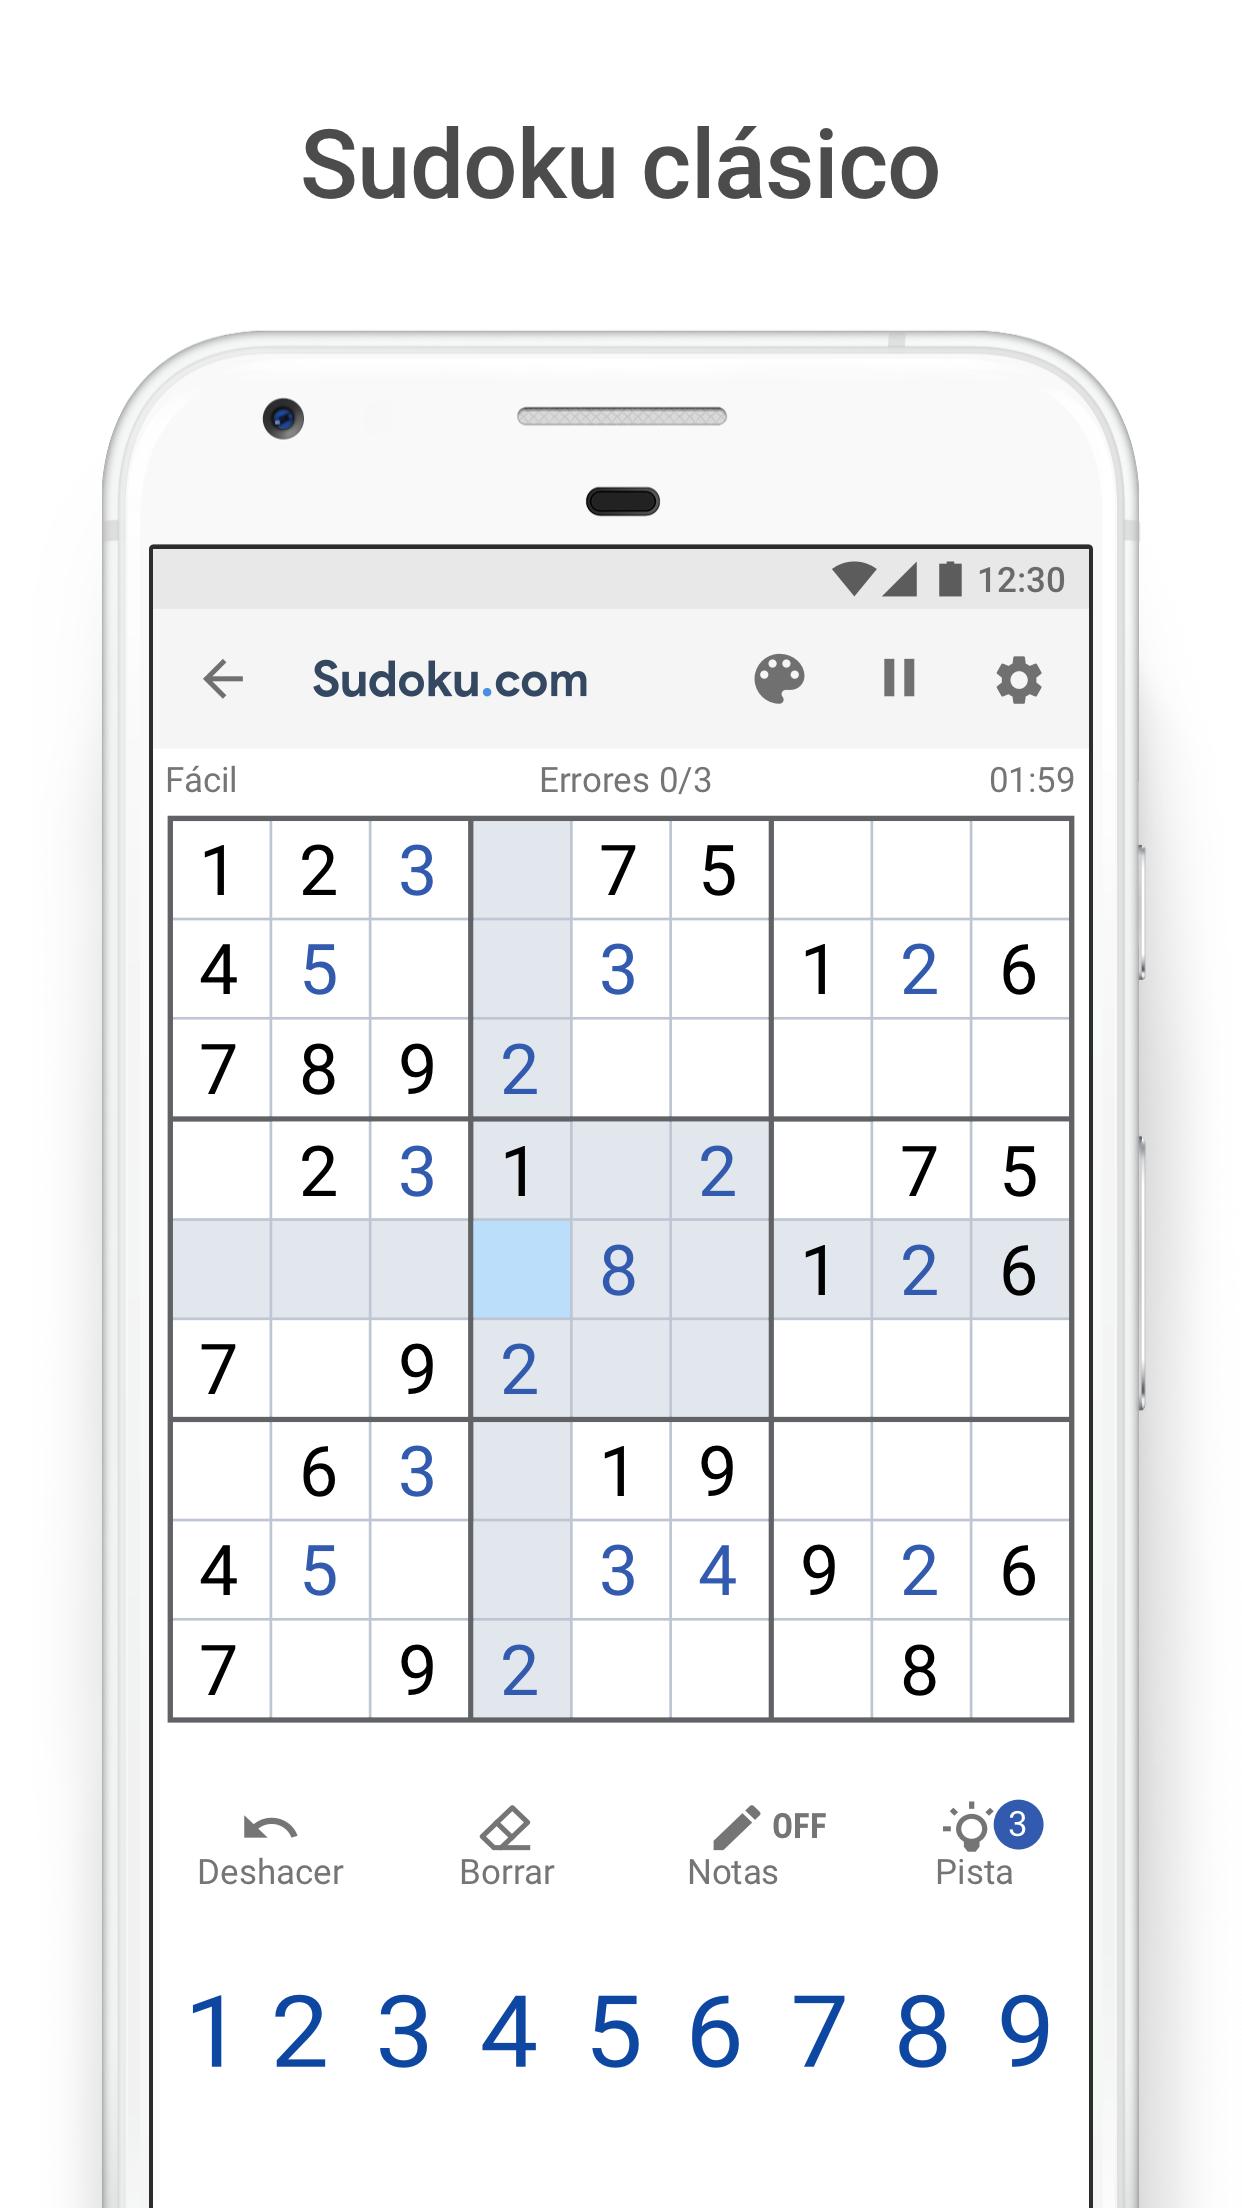 Sudoku.com - Sudoku clásico for Android - APK Download